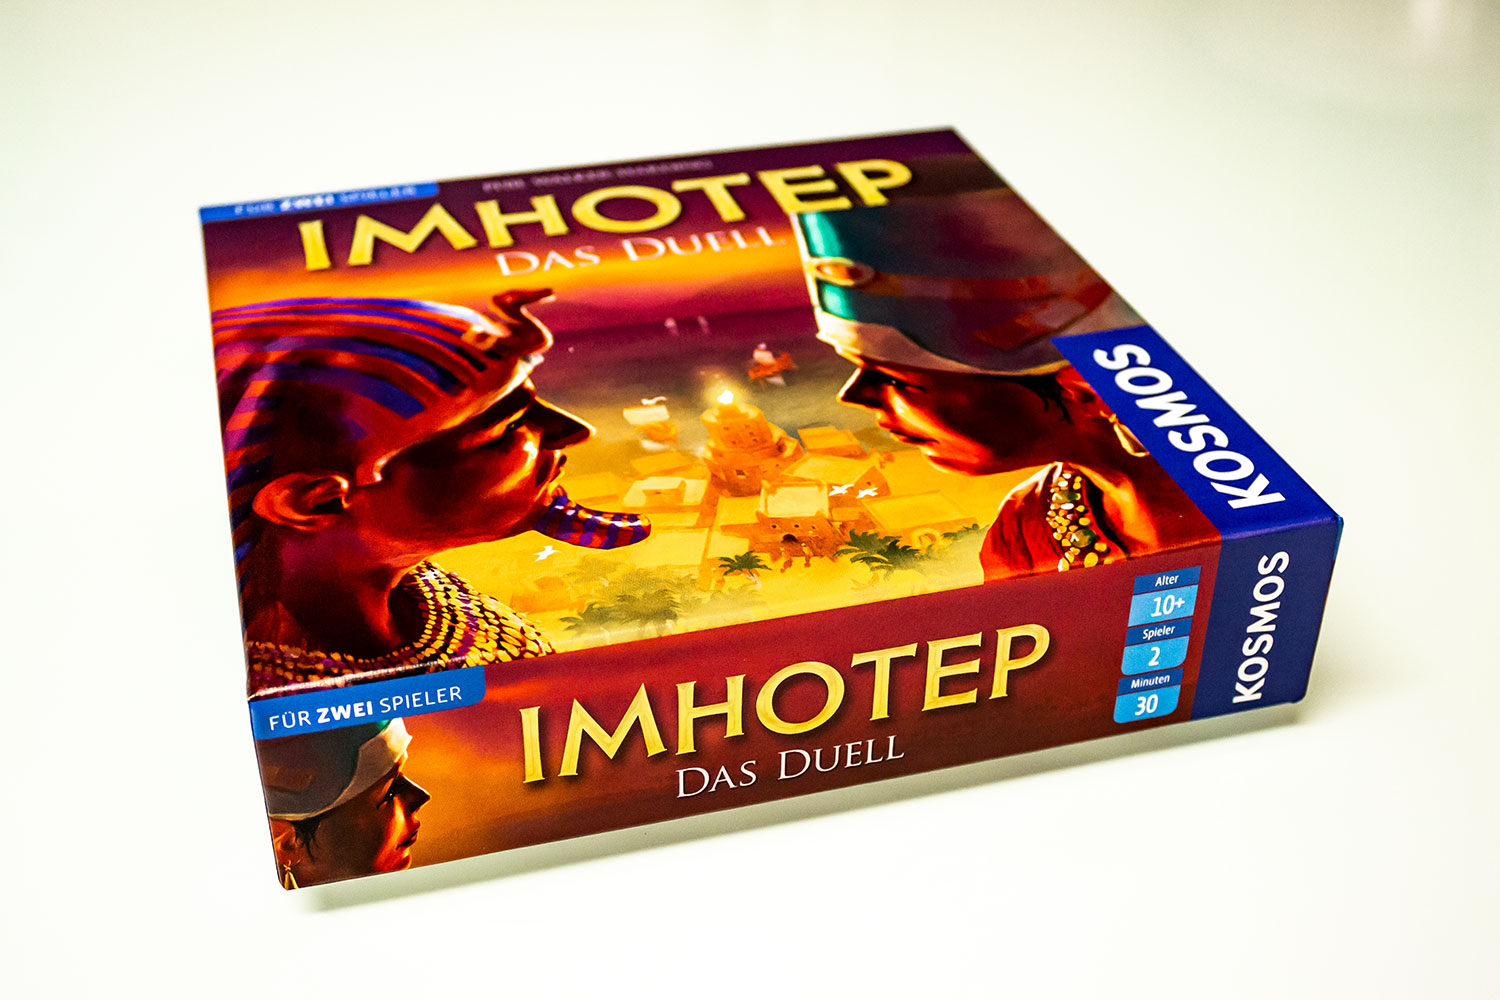  Imhotep - Das Duell Imhotep - Das Duell - Das Spielmaterialerscheint im September